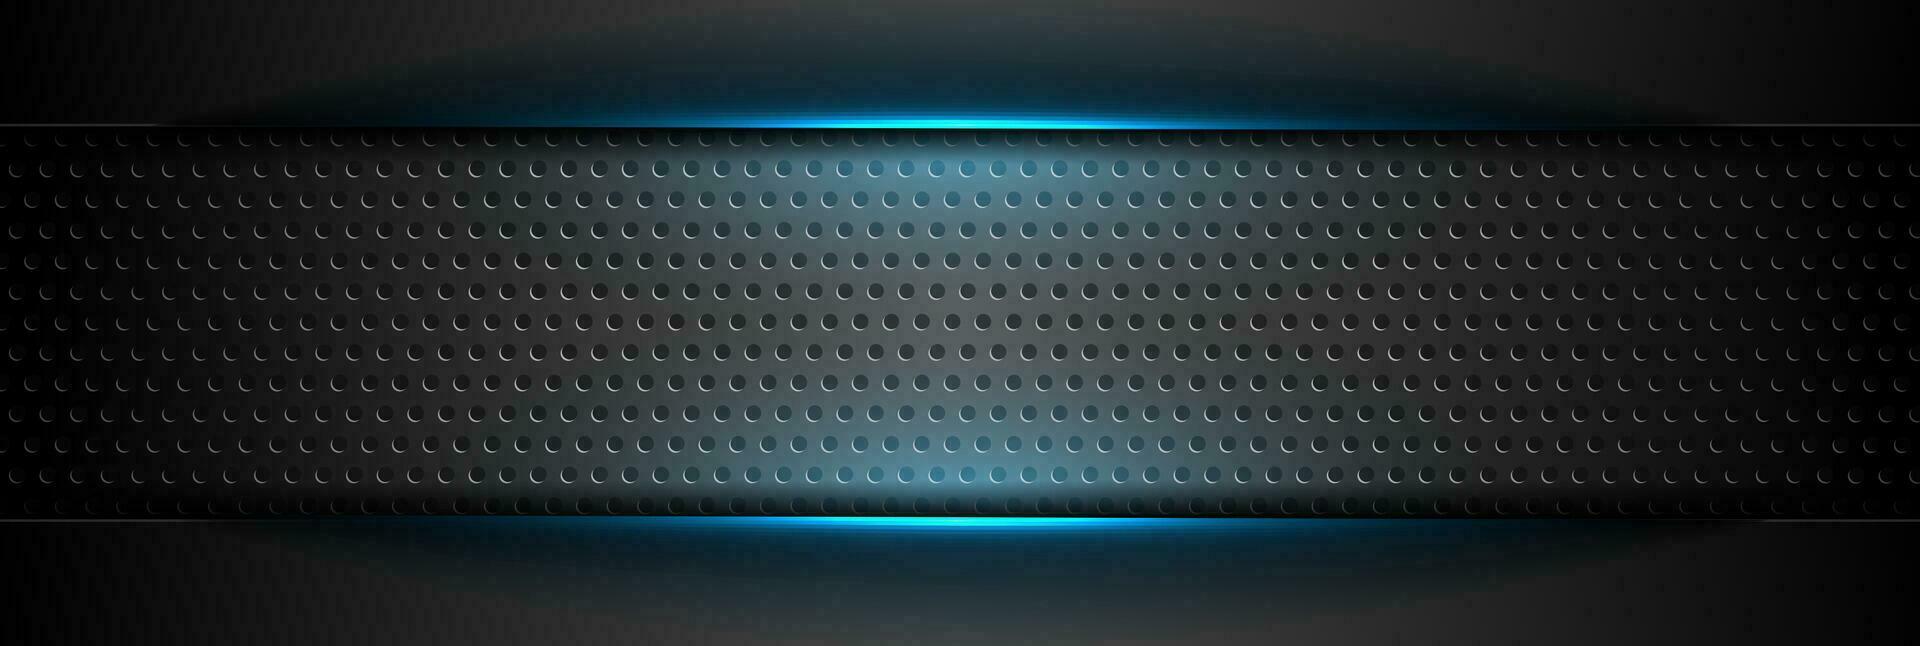 futuristische technologie achtergrond met blauw gloeiend lijnen vector